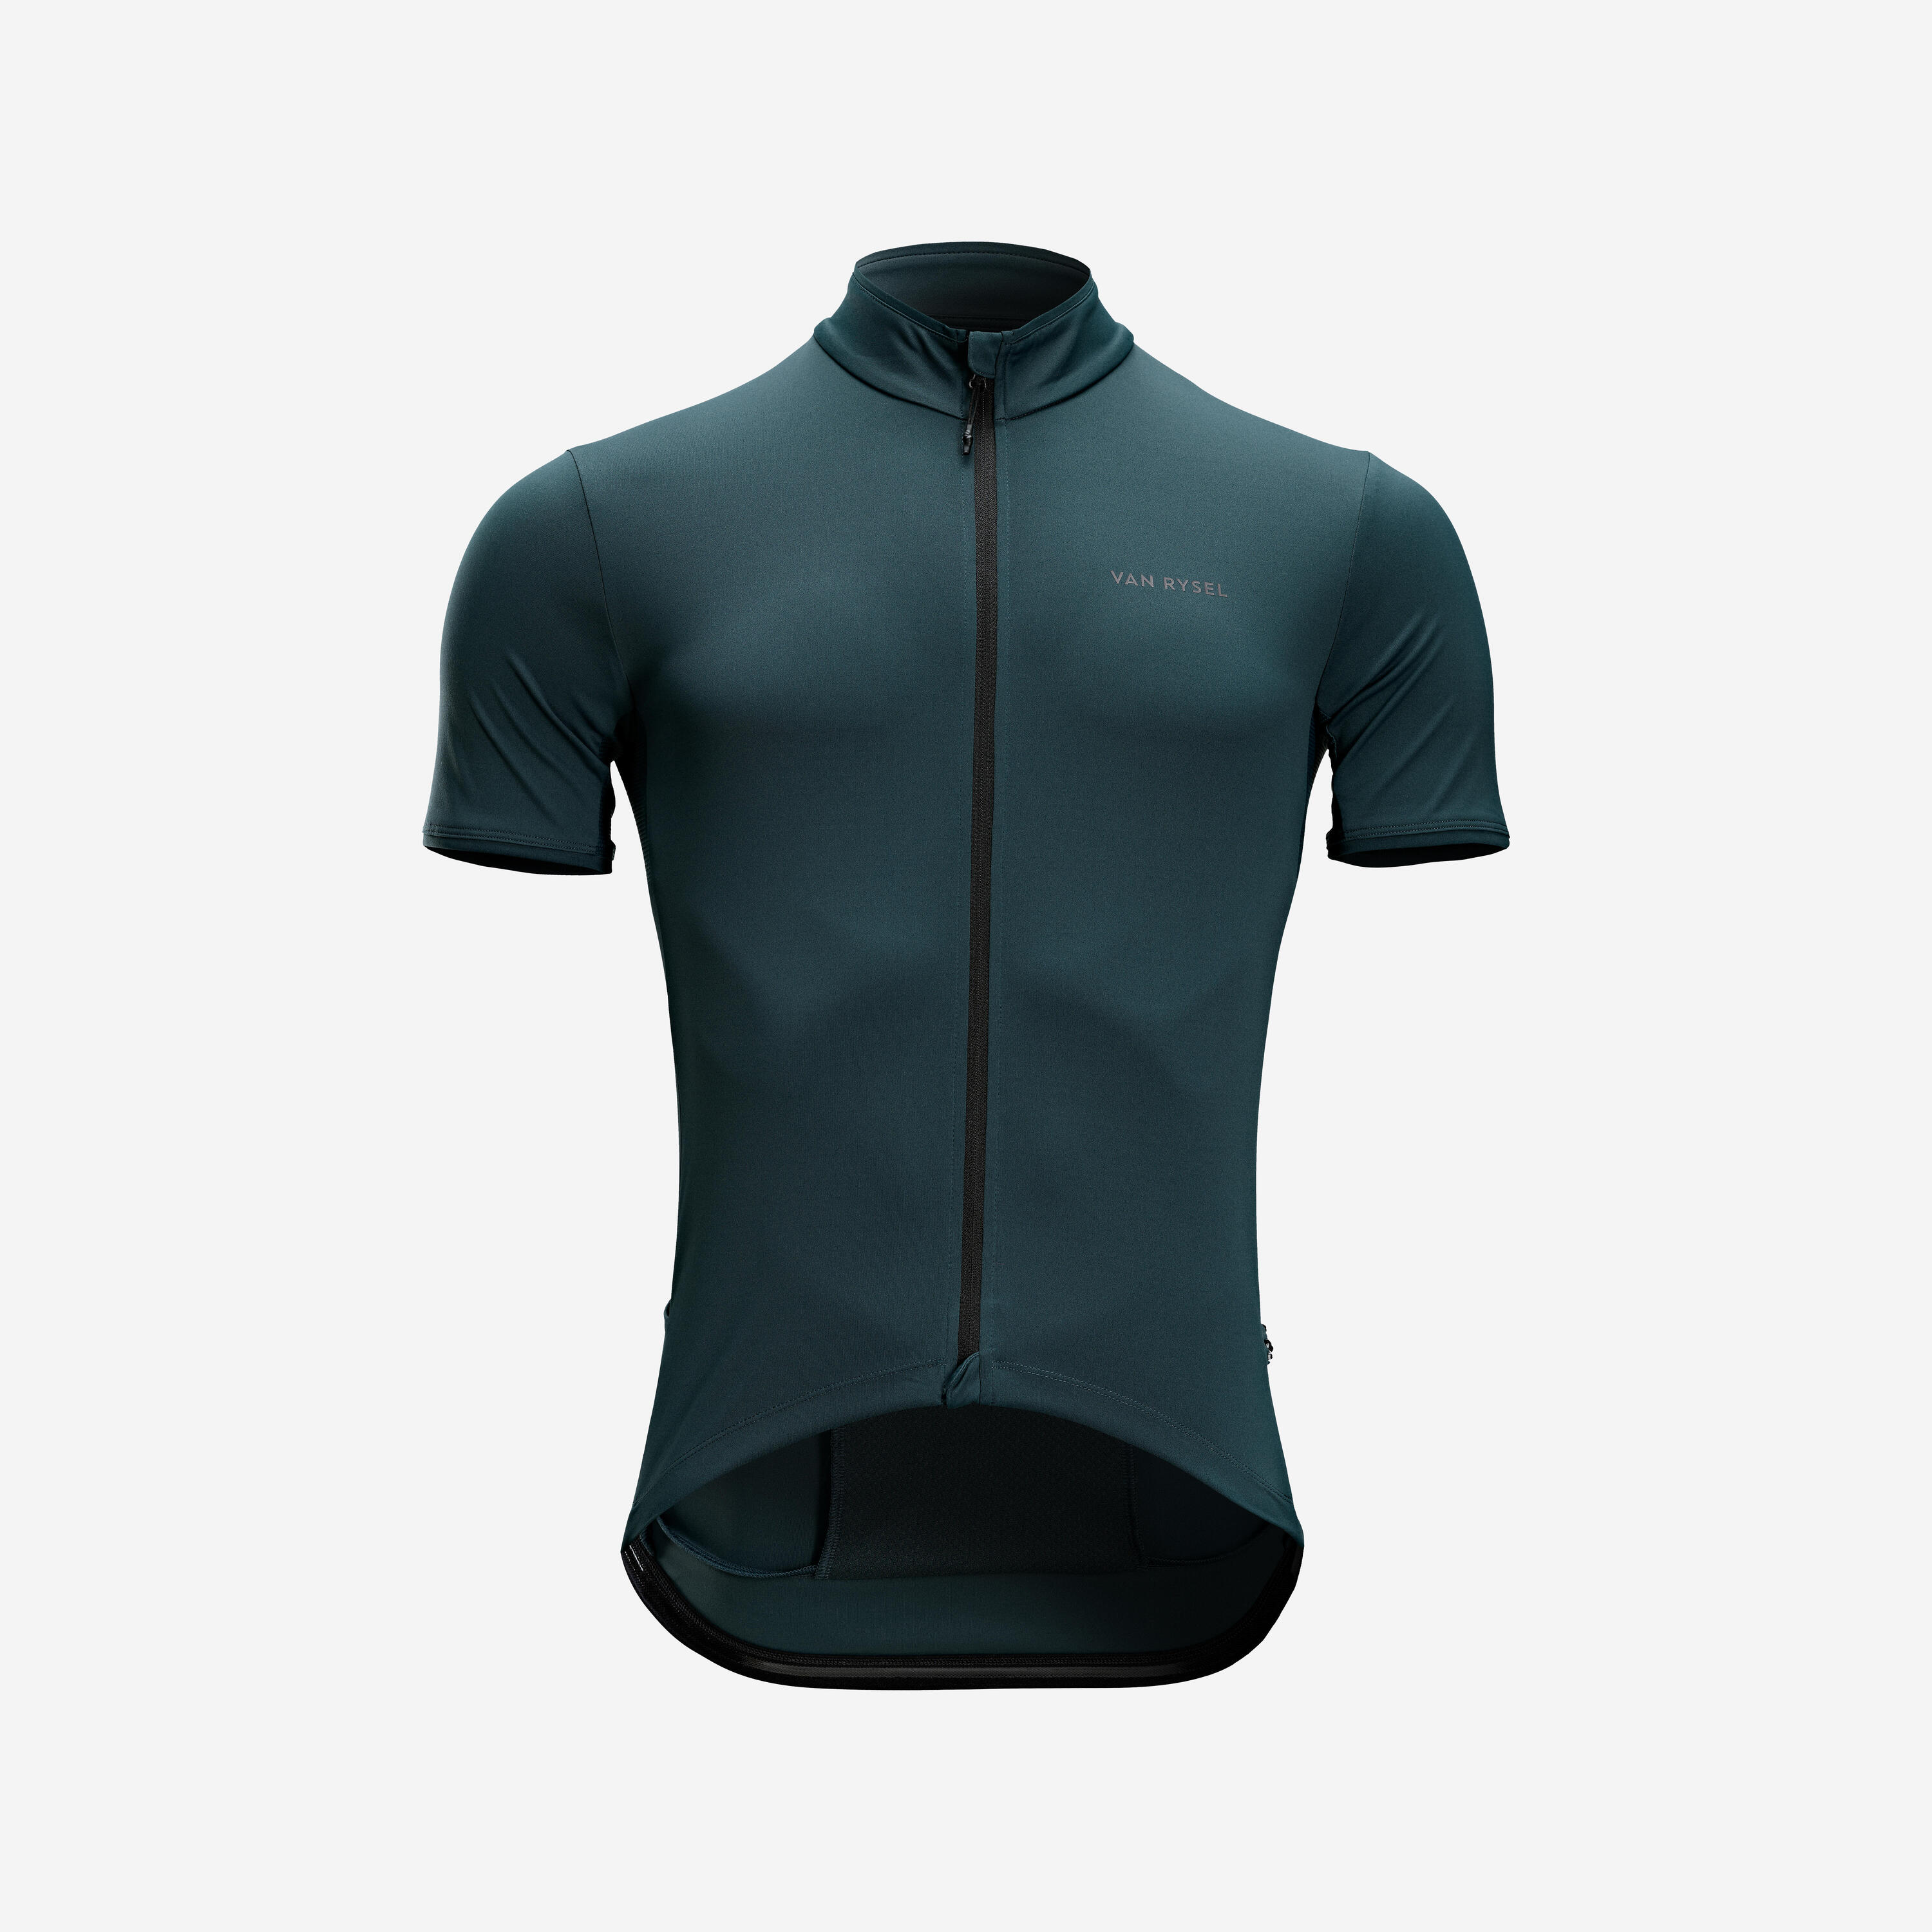 Men's Road Cycling Short-Sleeved Summer Jersey Endurance - Emerald Green 1/6